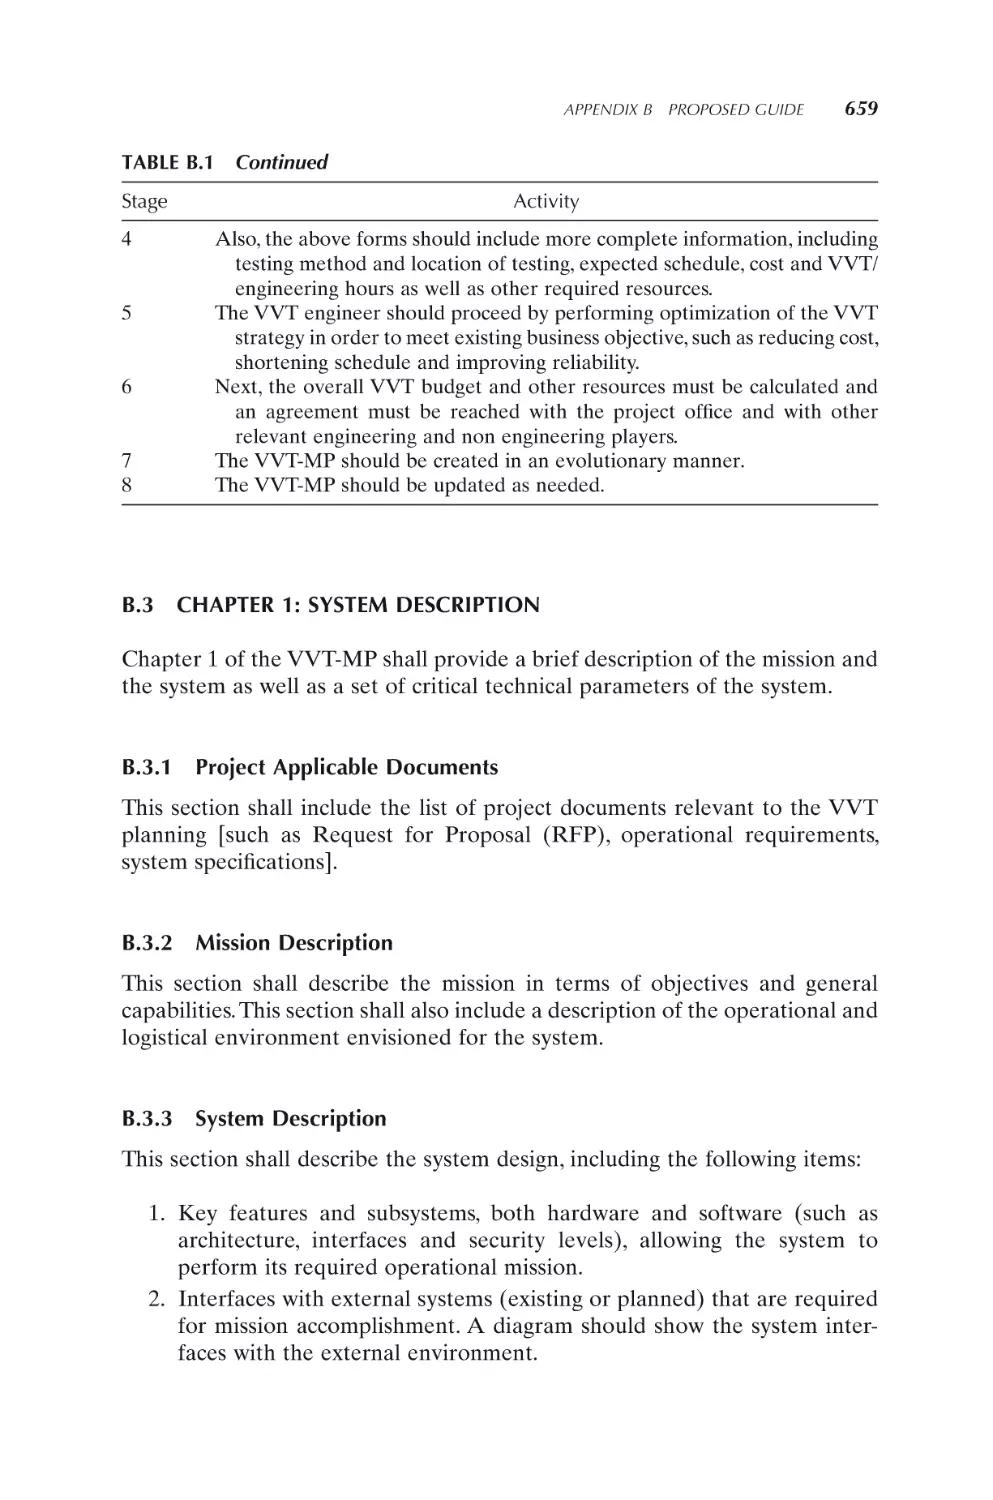 B.3 CHAPTER 1
B.3.1 Project Applicable Documents
B.3.2 Mission Description
B.3.3 System Description